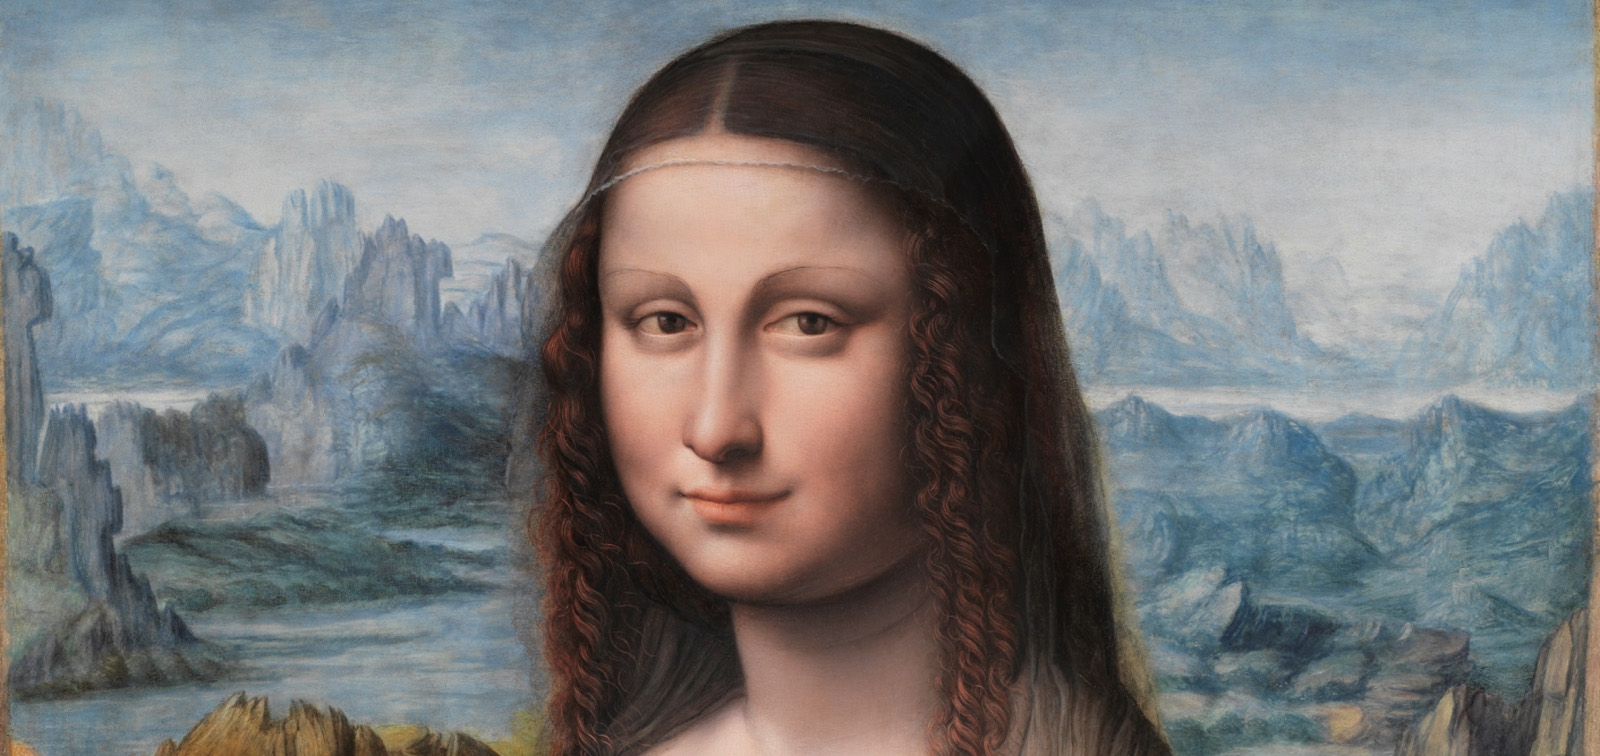 Leonardo y la copia de Mona lisa. Nuevos planteamientos